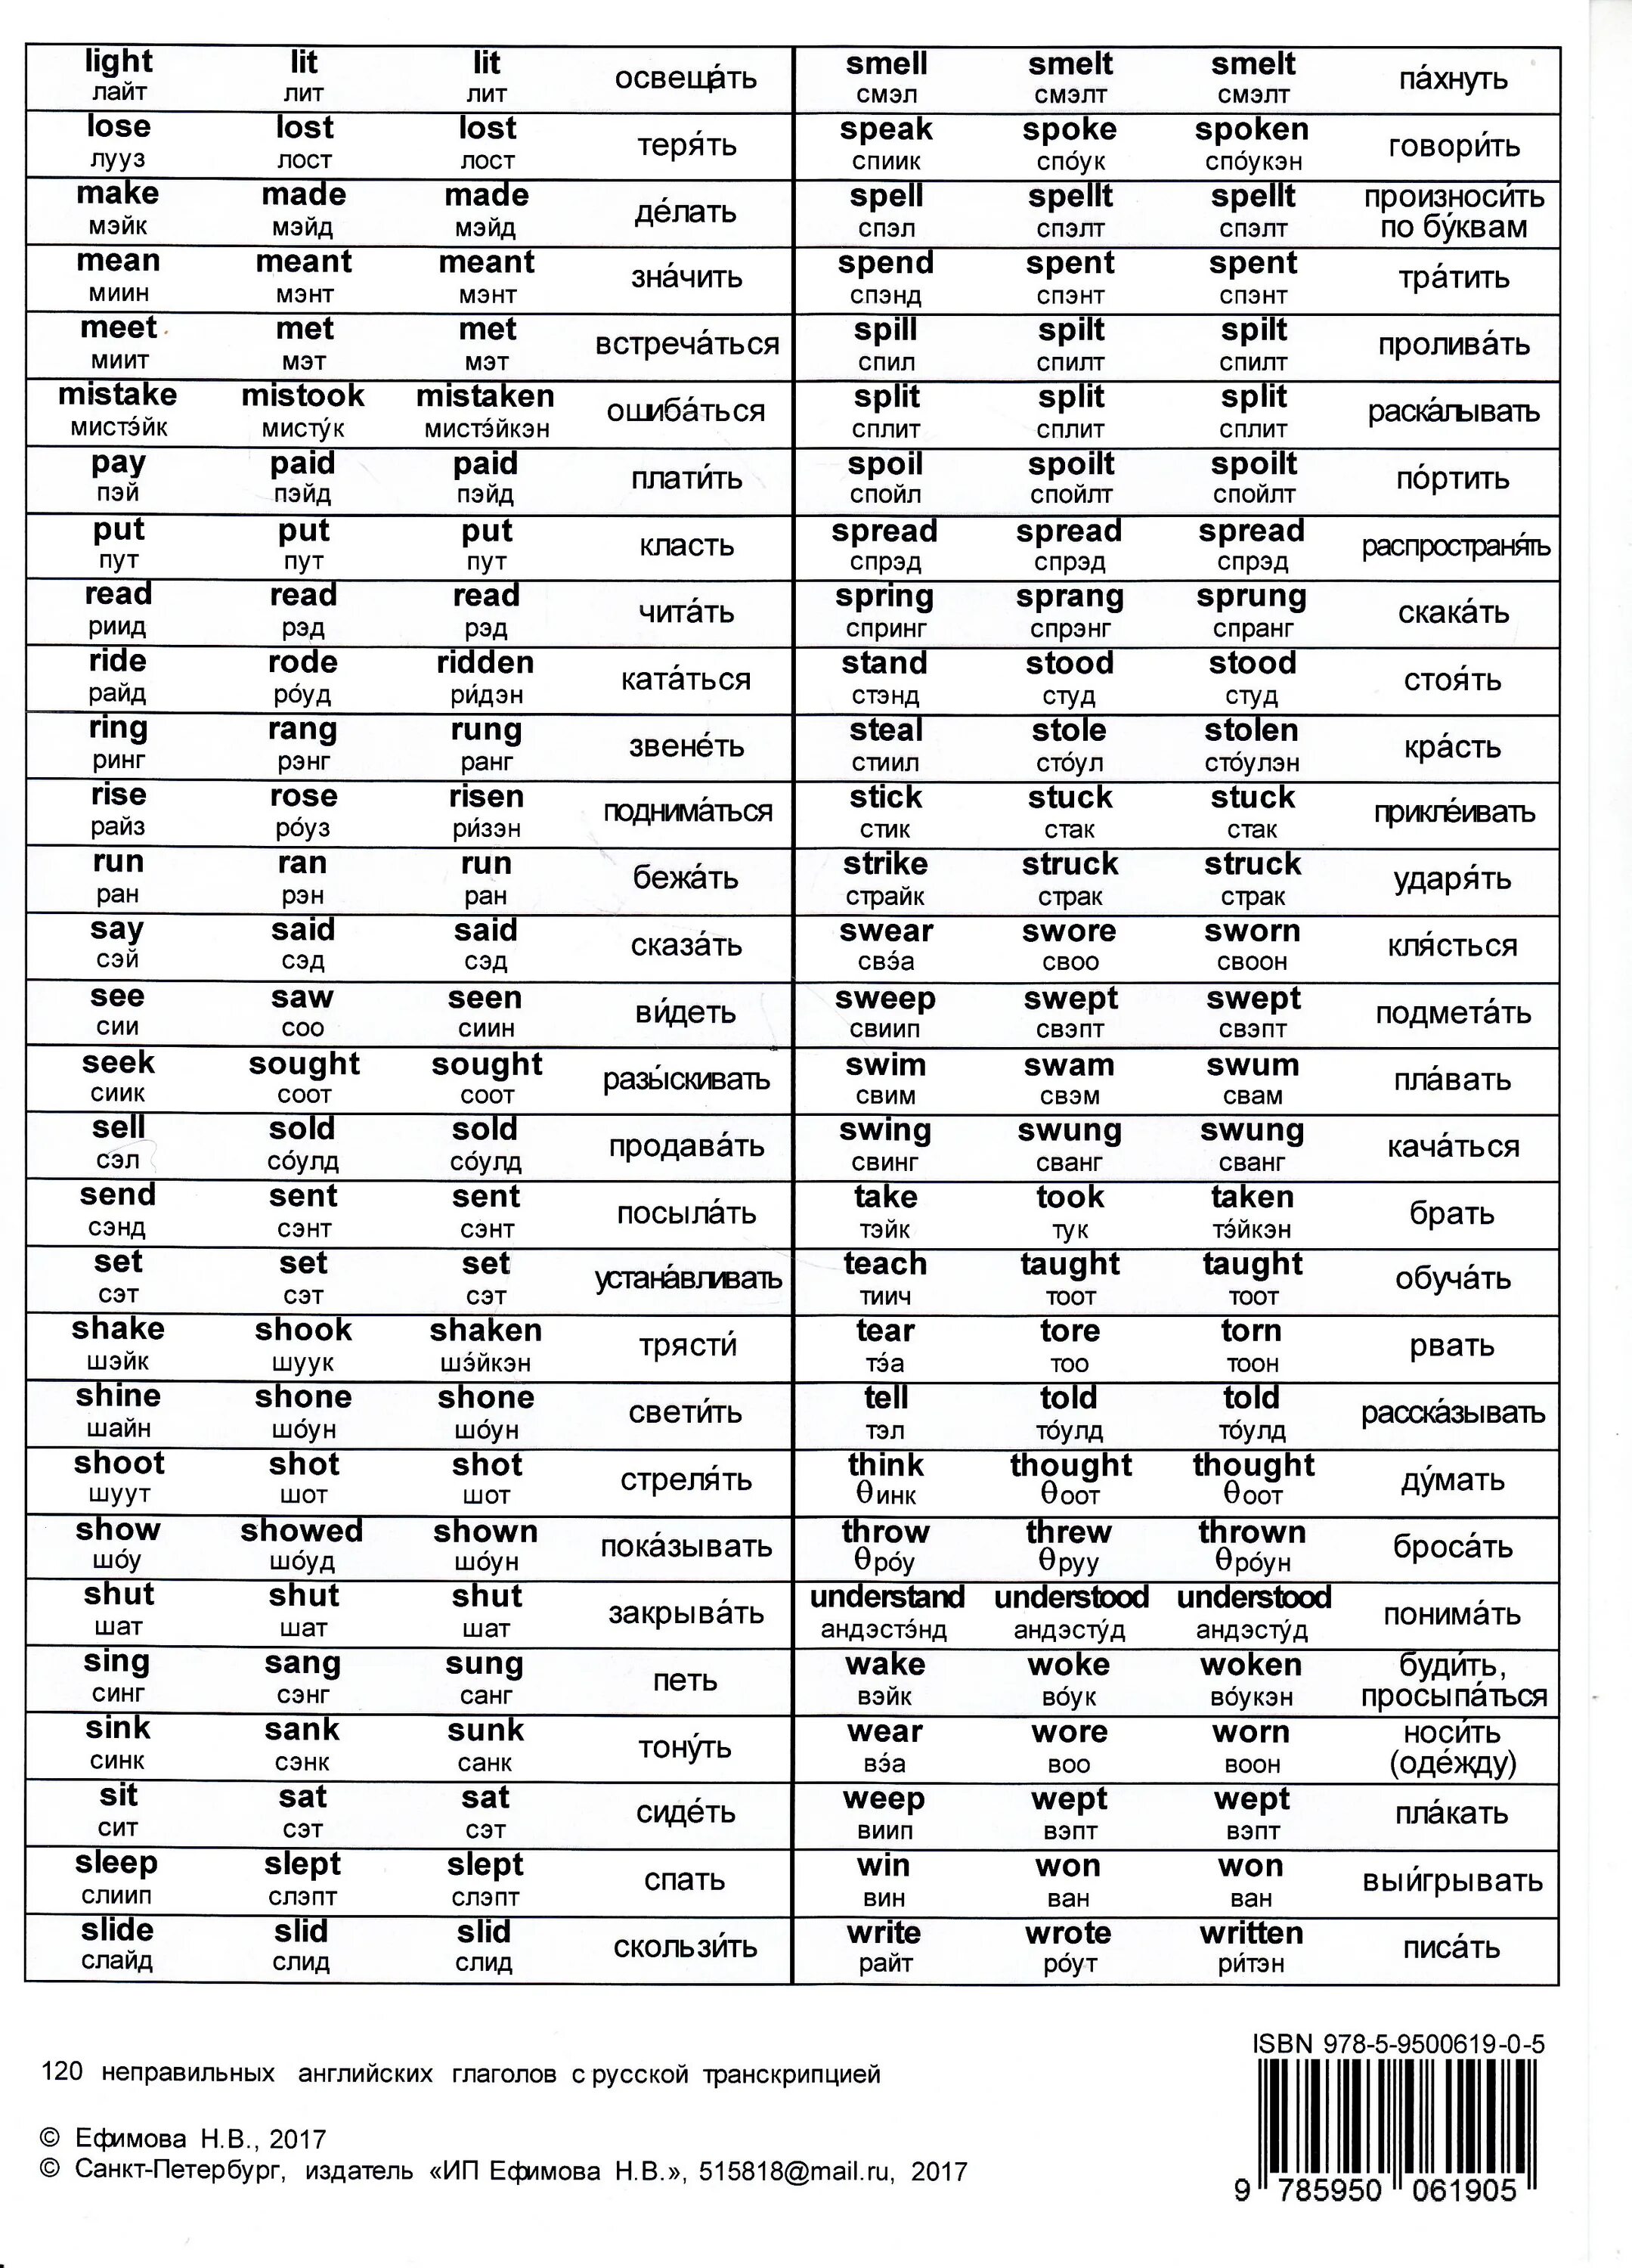 Таблица неправильных глаголов английский с произношением